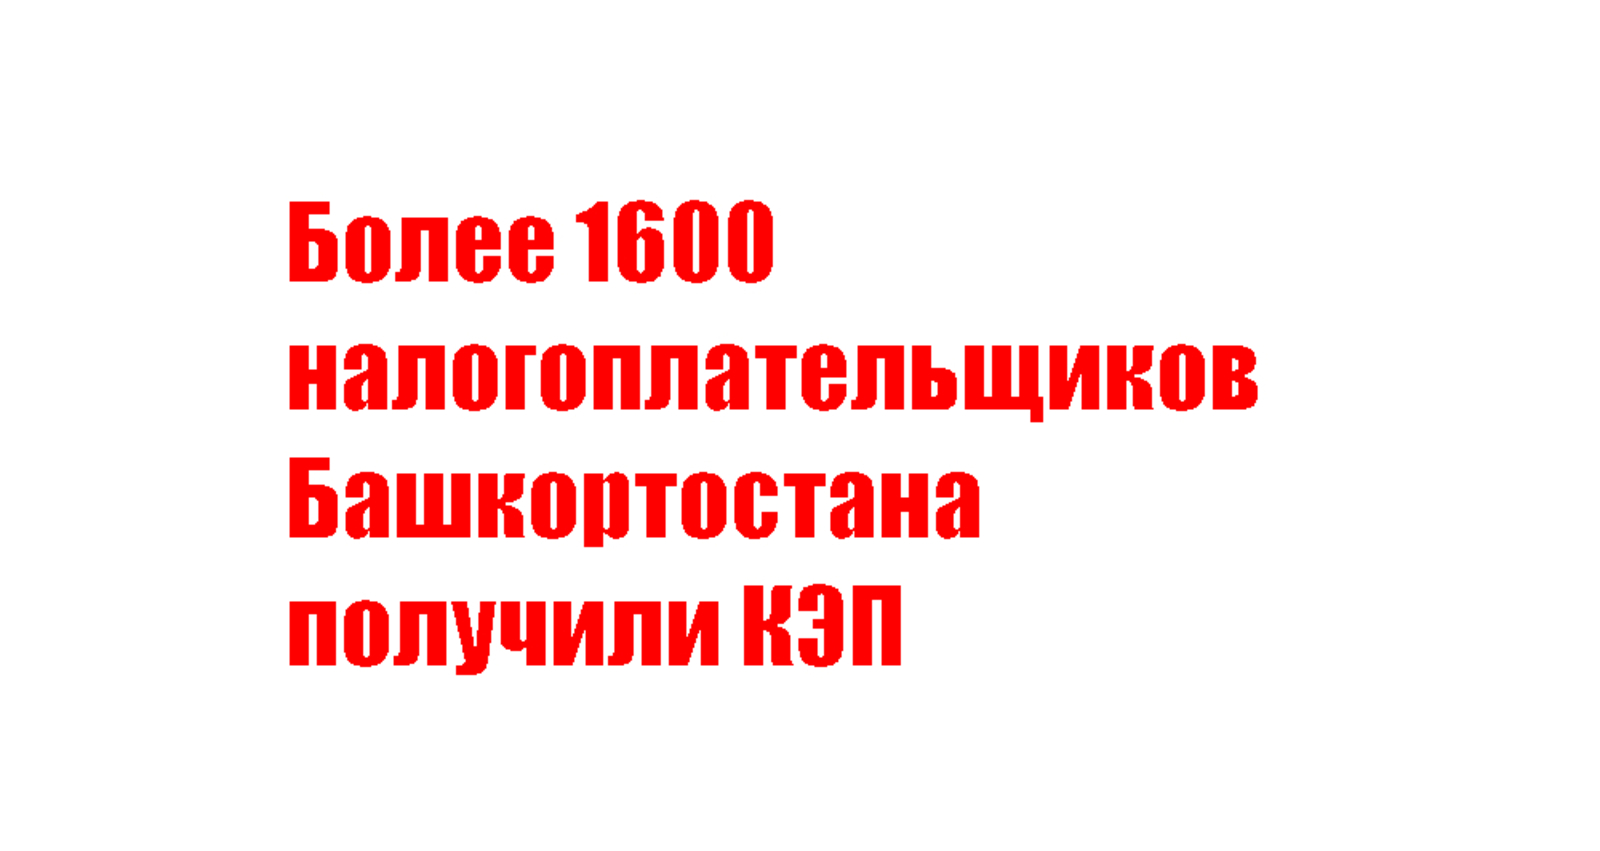 Более 1600 налогоплательщиков Башкортостана получили КЭП